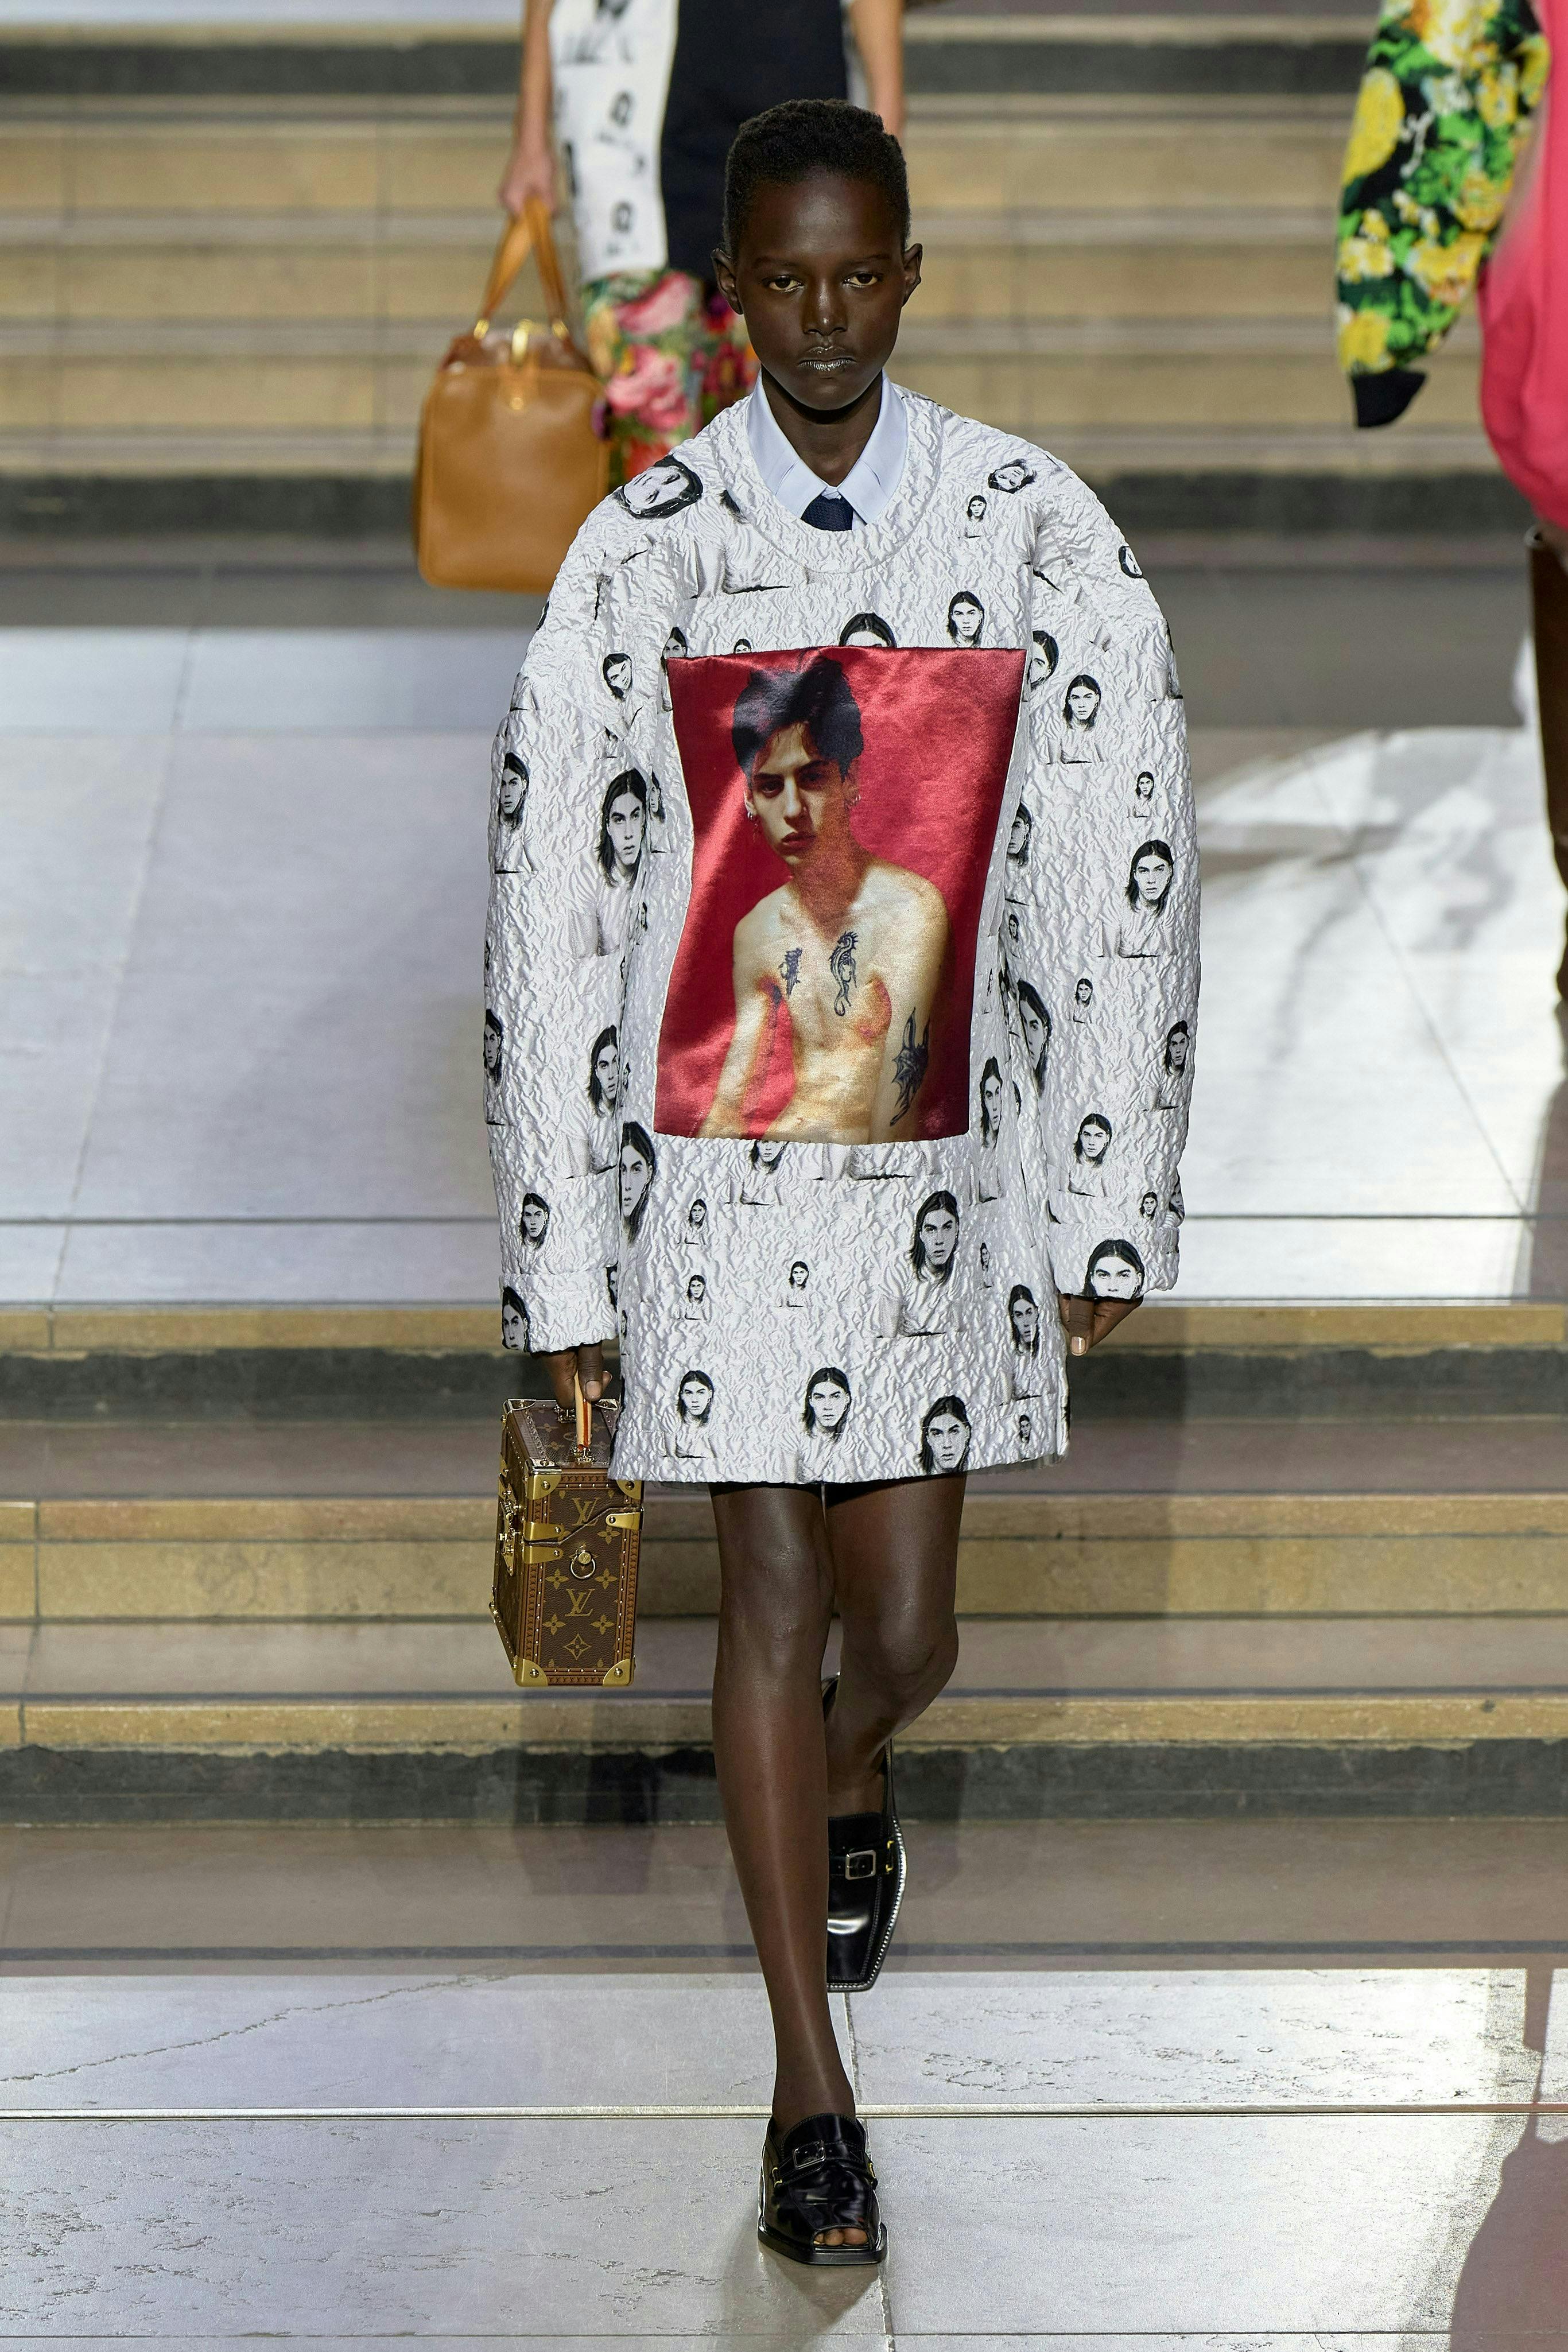 Donna Con La Giacca Di Louis Vuitton E Il Vestito Di Fronte Alla Sfilata Di  Moda Milano Immagine Editoriale - Immagine di illustrativo, esposizione:  194220920